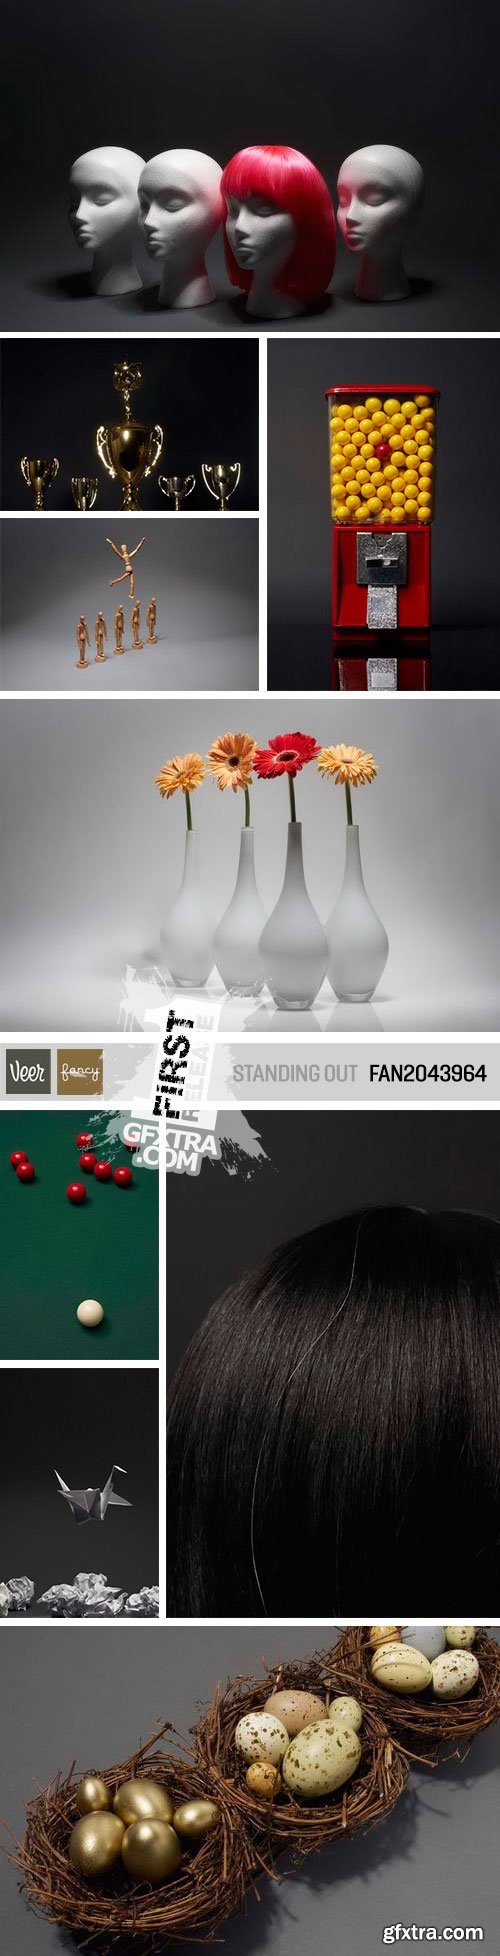 Veer Fancy FAN2043964 Standing Out